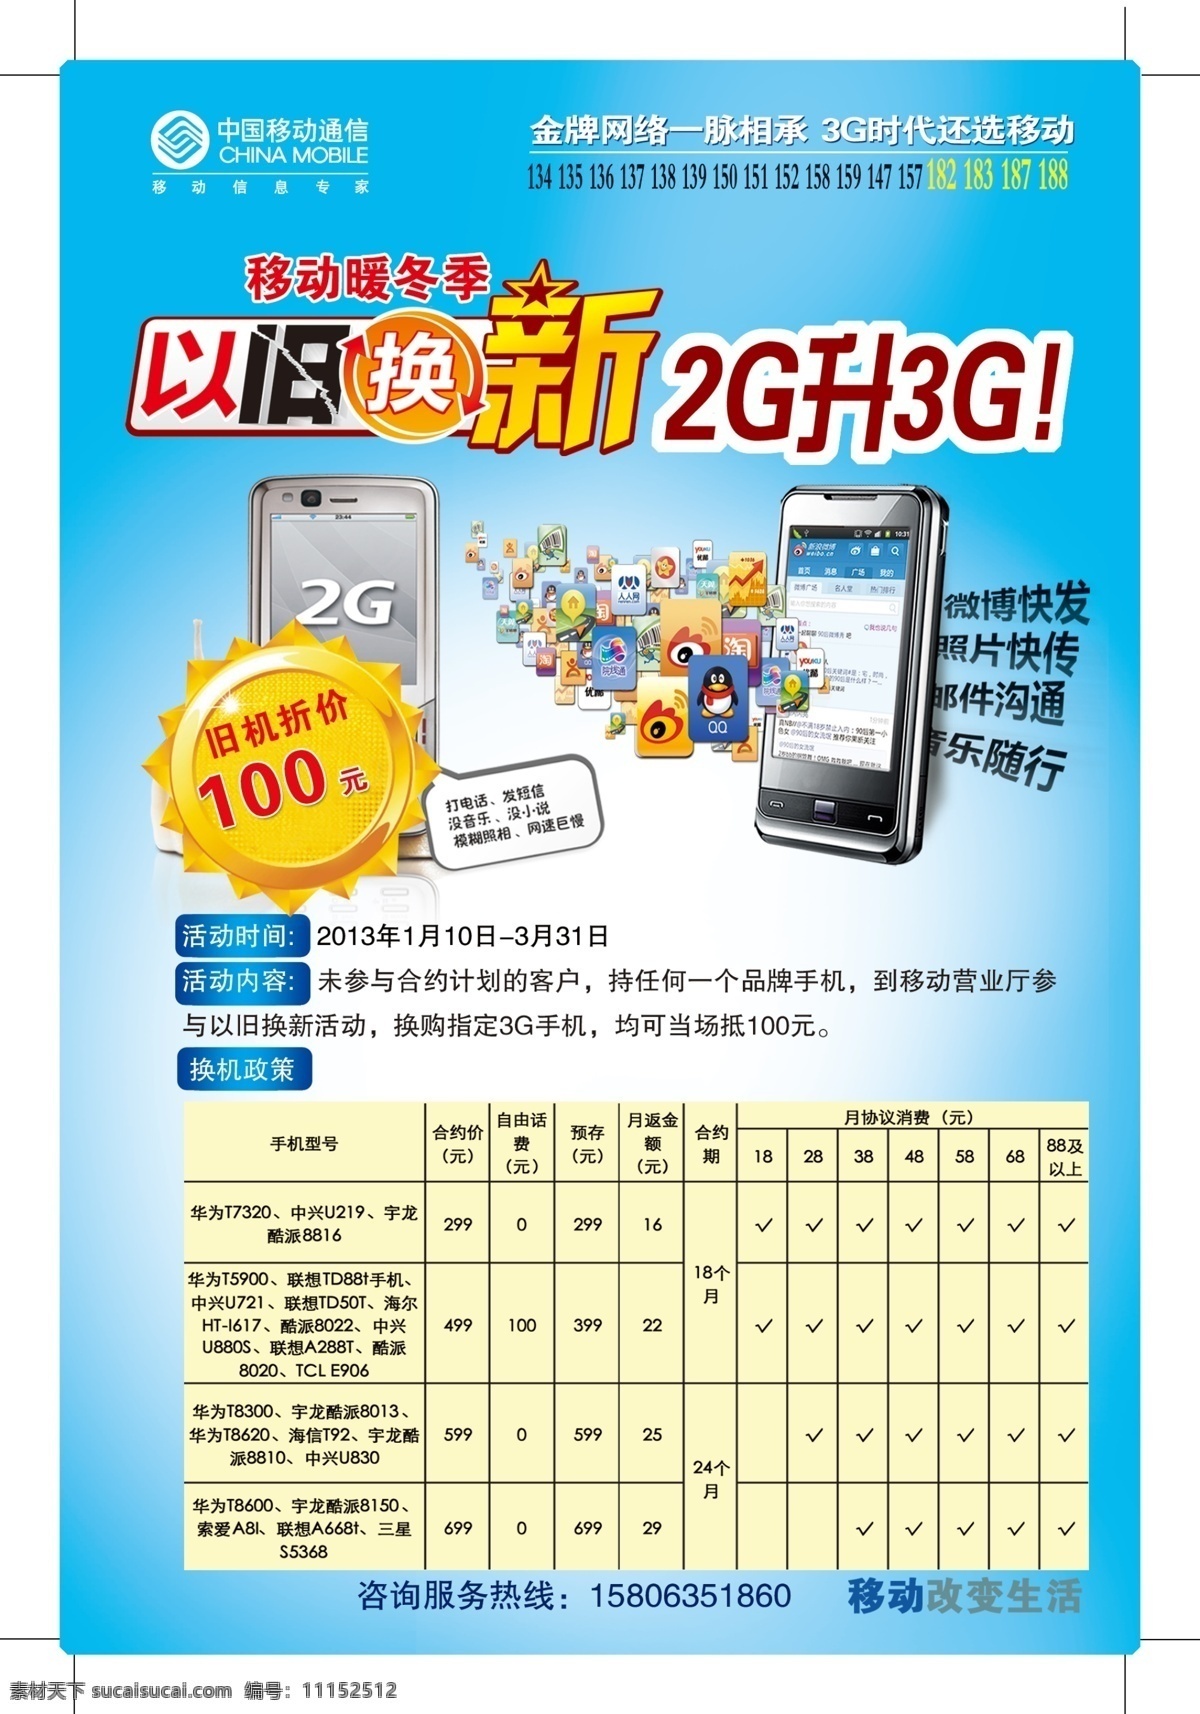 广告设计模板 蓝色背景 手机图片 手机以旧换新 以旧换新 源文件 以旧换新字体 中国移动 2g 升 3g 海报背景图